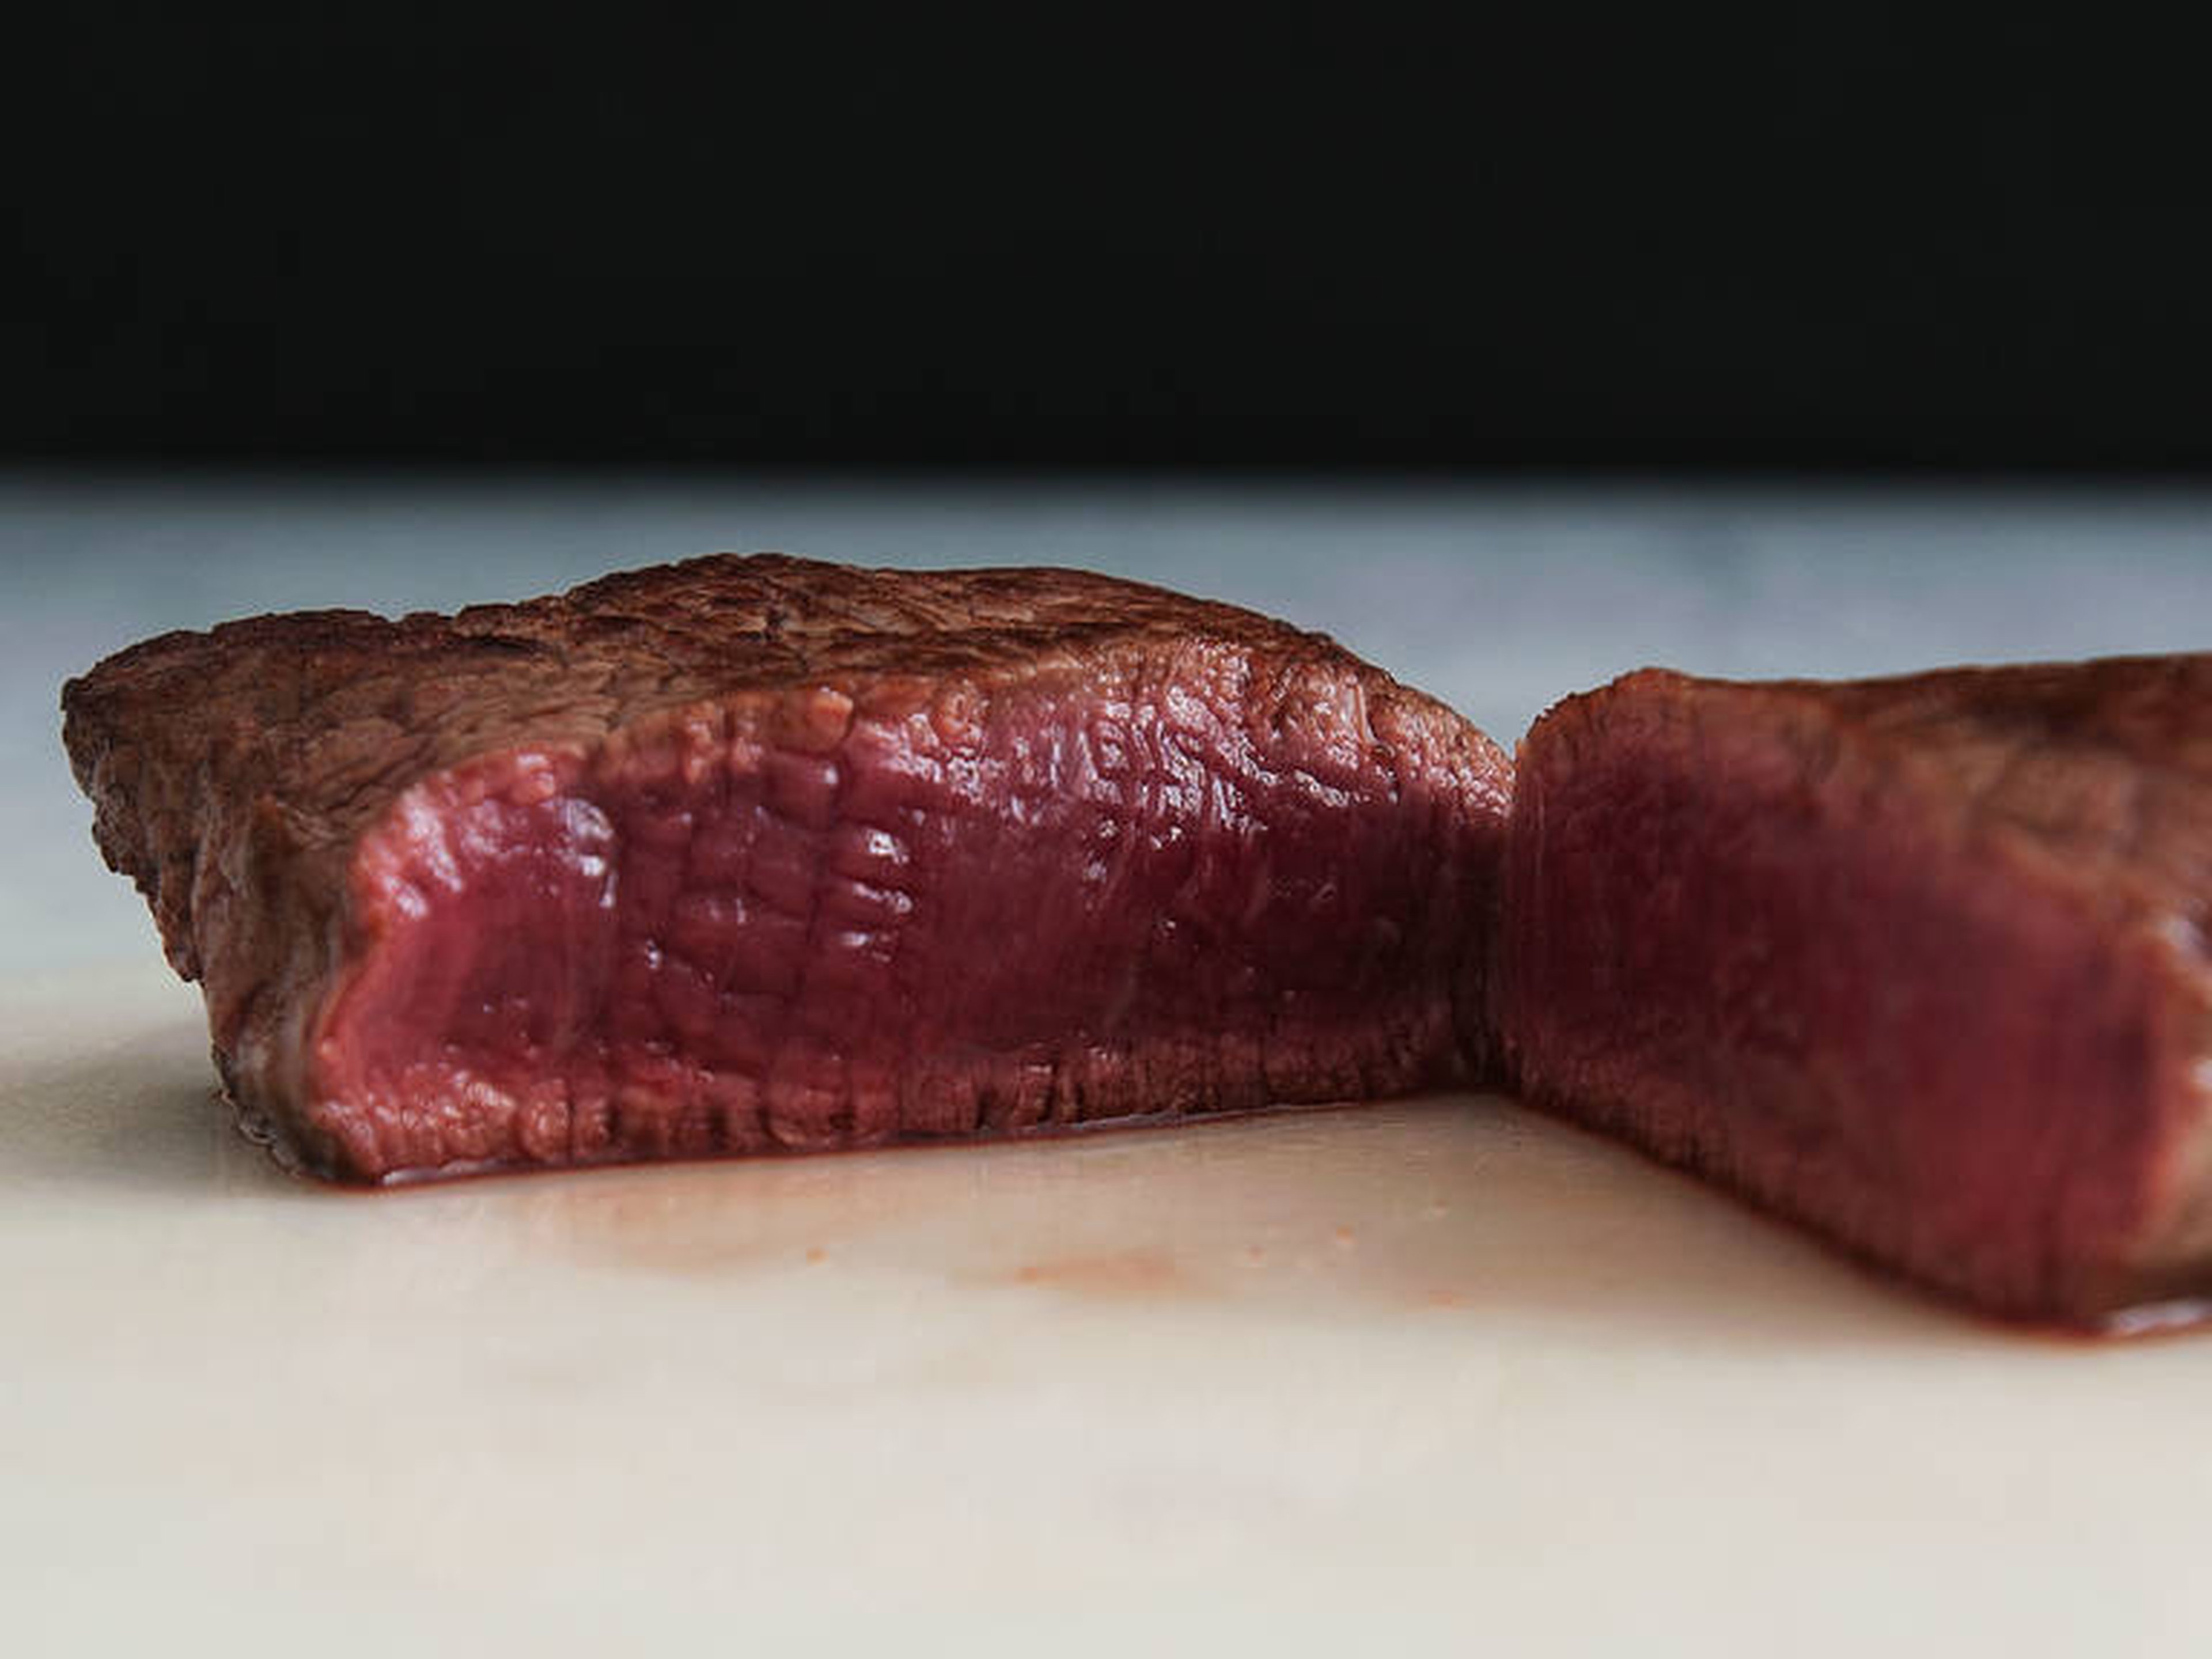 Steak richtig braten: Innen saftig, außen kross